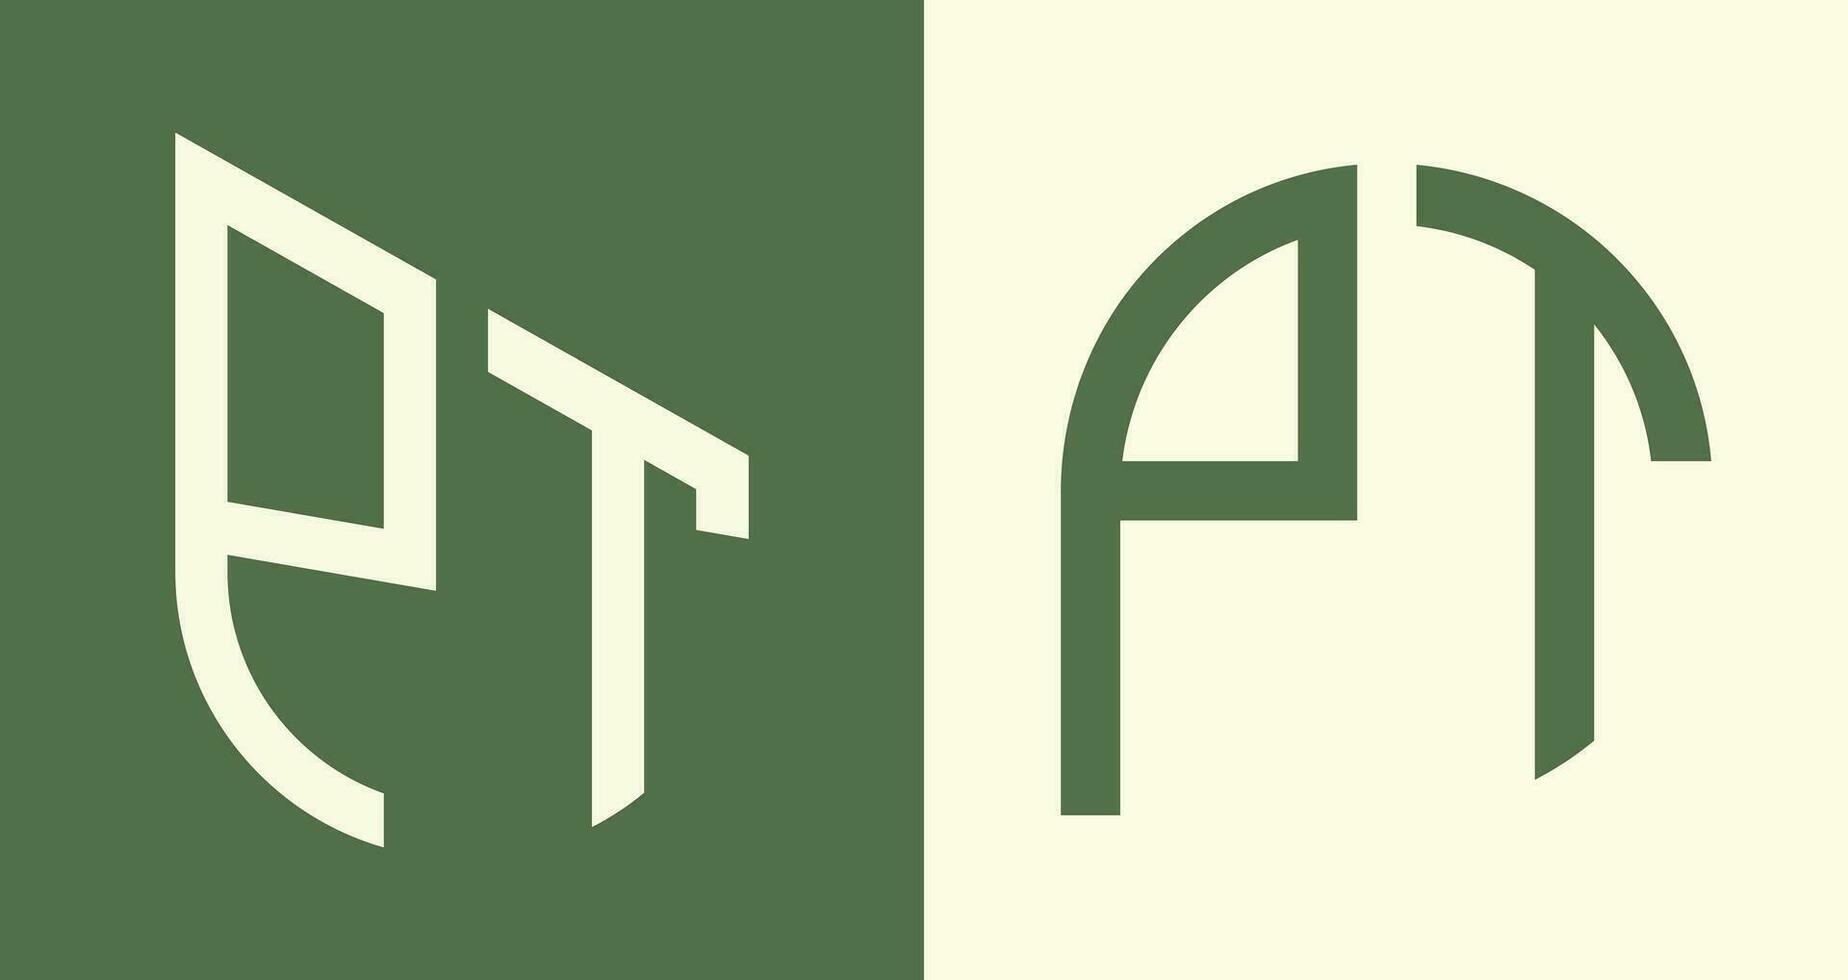 Creative simple Initial Letters PT Logo Designs Bundle. vector